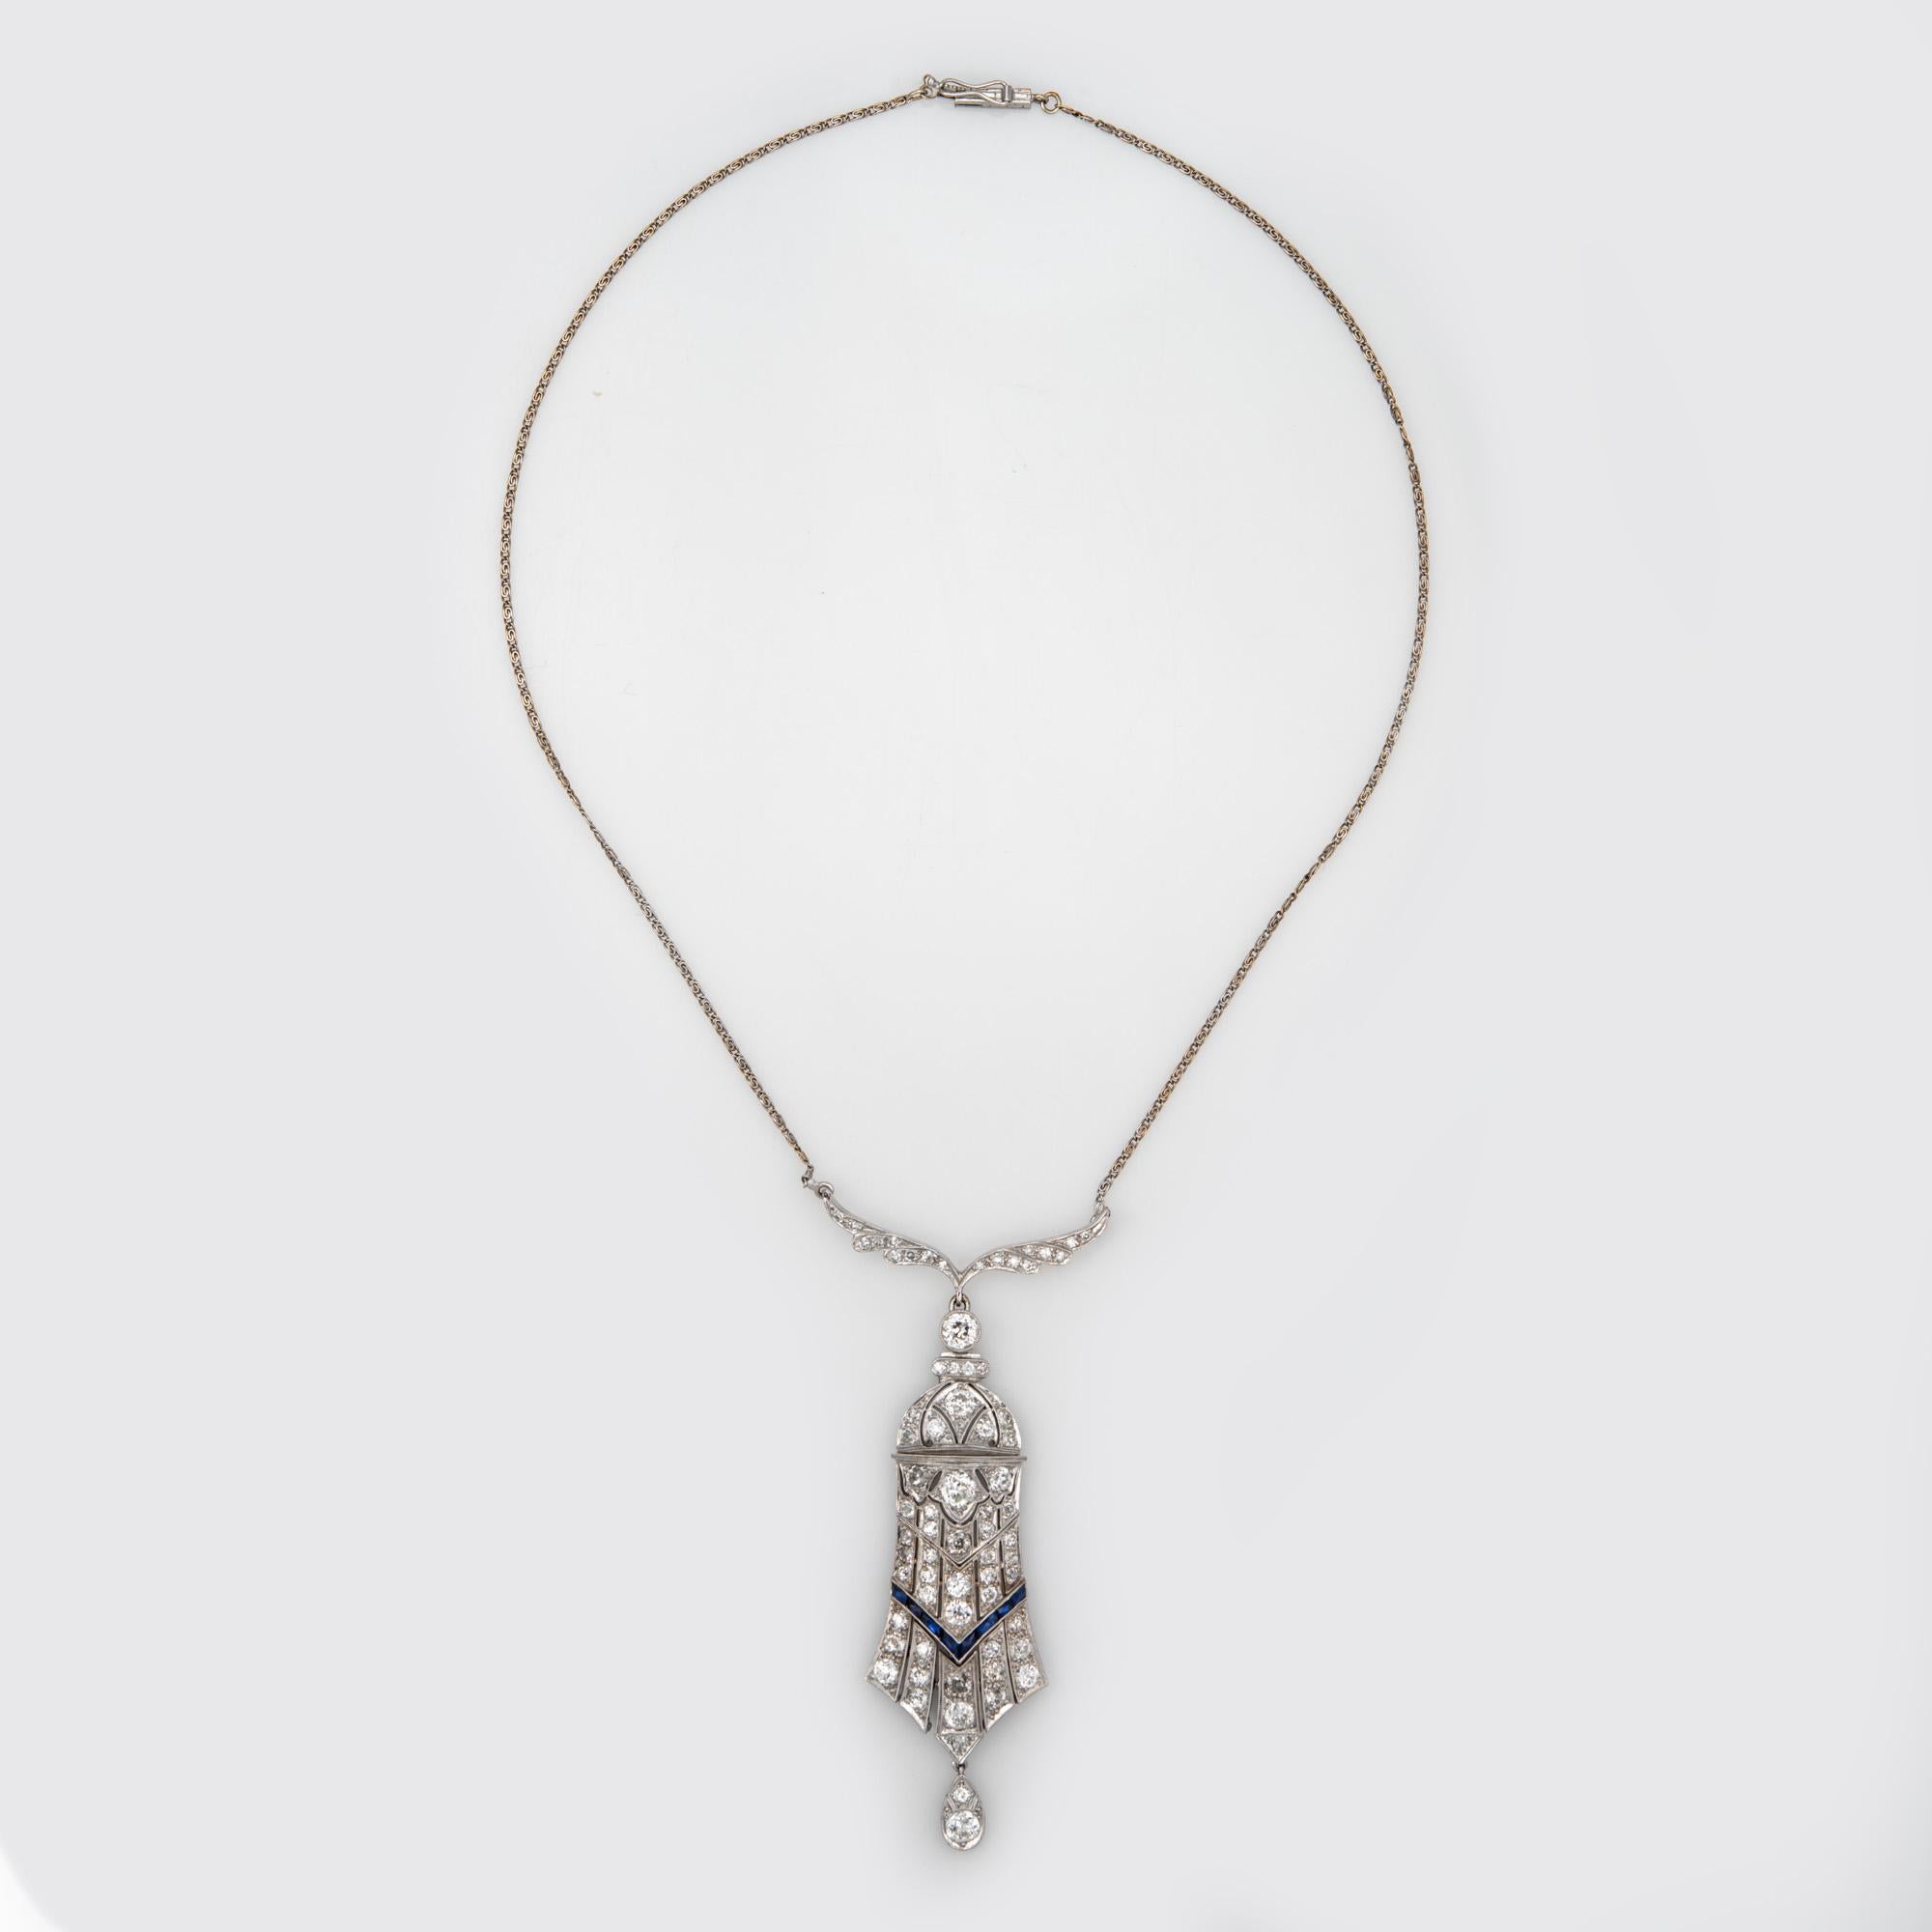 Fein ausgearbeitete Diamant-Halskette aus der Art-Déco-Ära (ca. 1920er bis 1930er Jahre), gefertigt aus 14 Karat Weißgold (Kette) und Platin.  

Die Diamanten im alten europäischen Schliff haben einen geschätzten Wert von 4 Karat. Kleine Saphire im